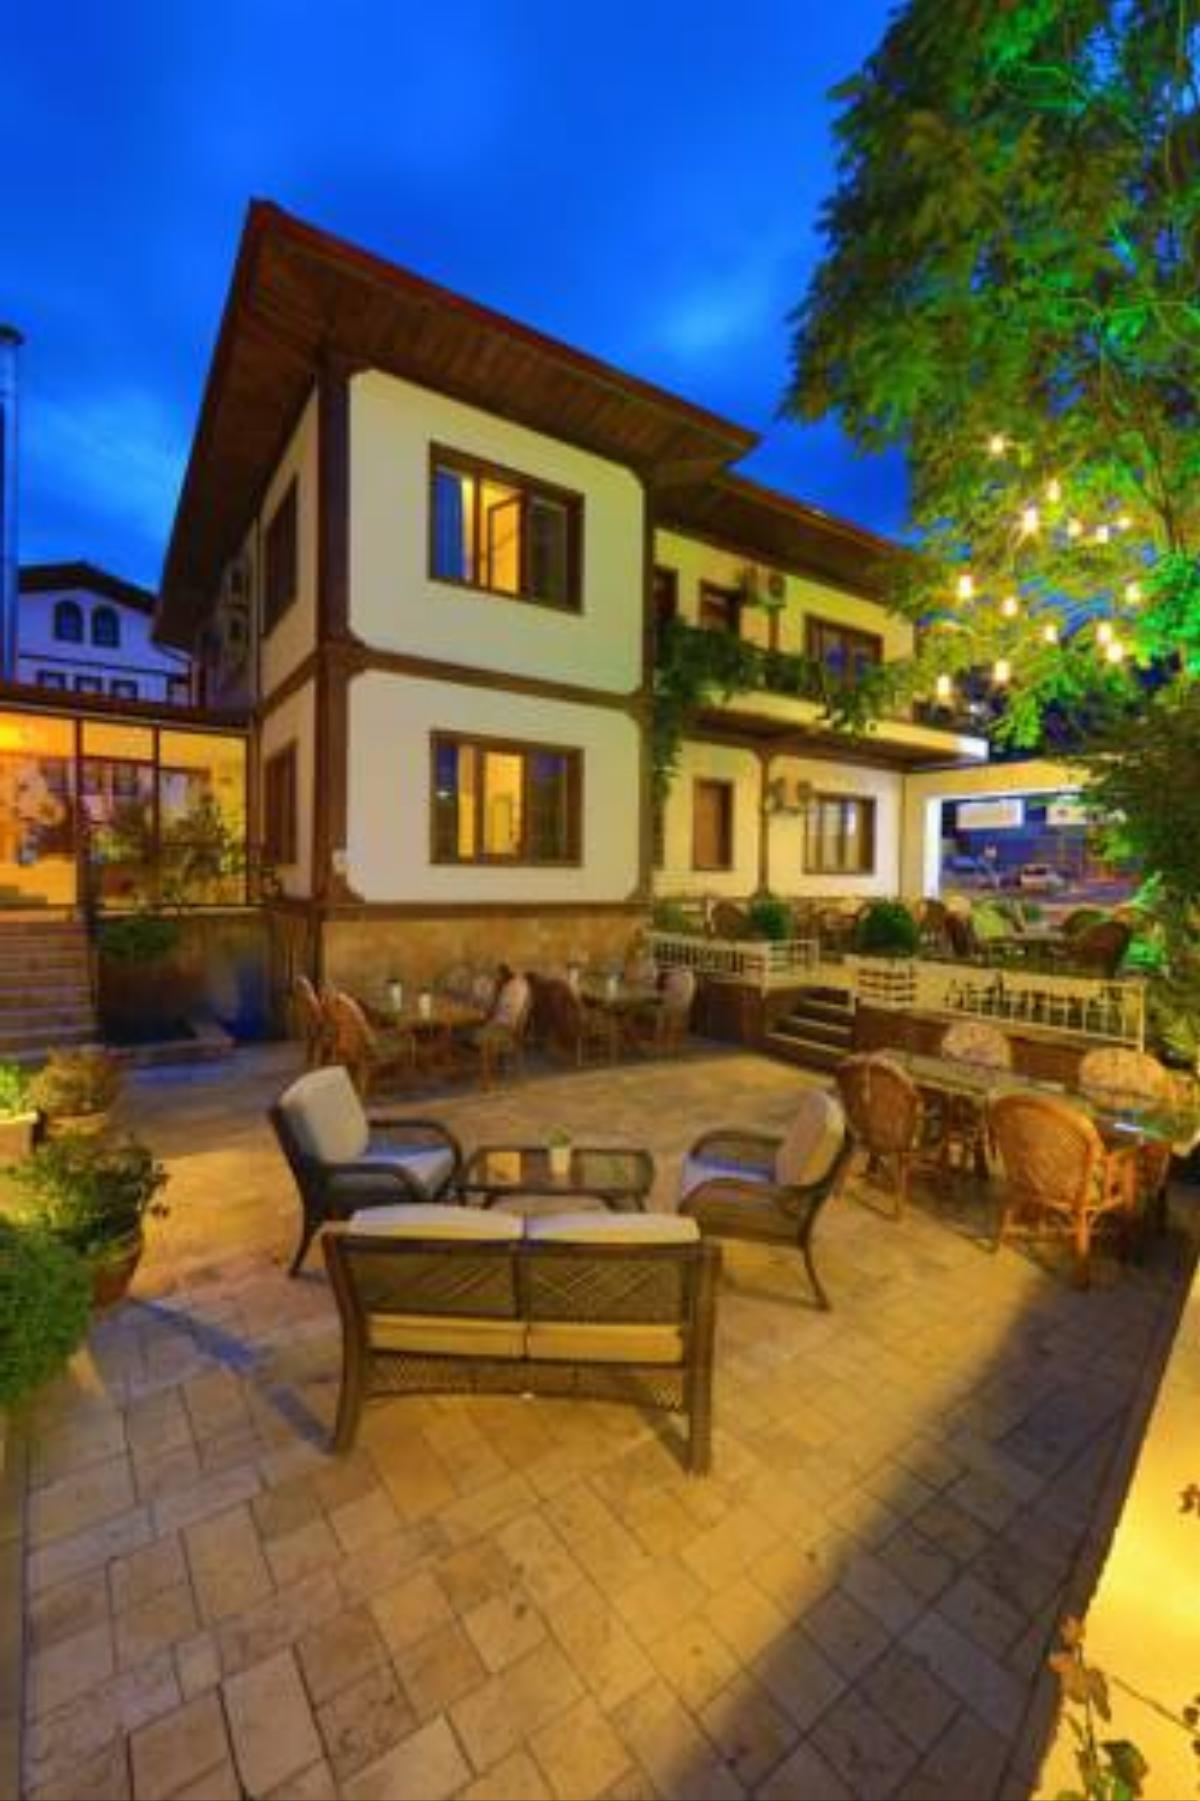 Lalehan Hotel Hotel Amasya Turkey